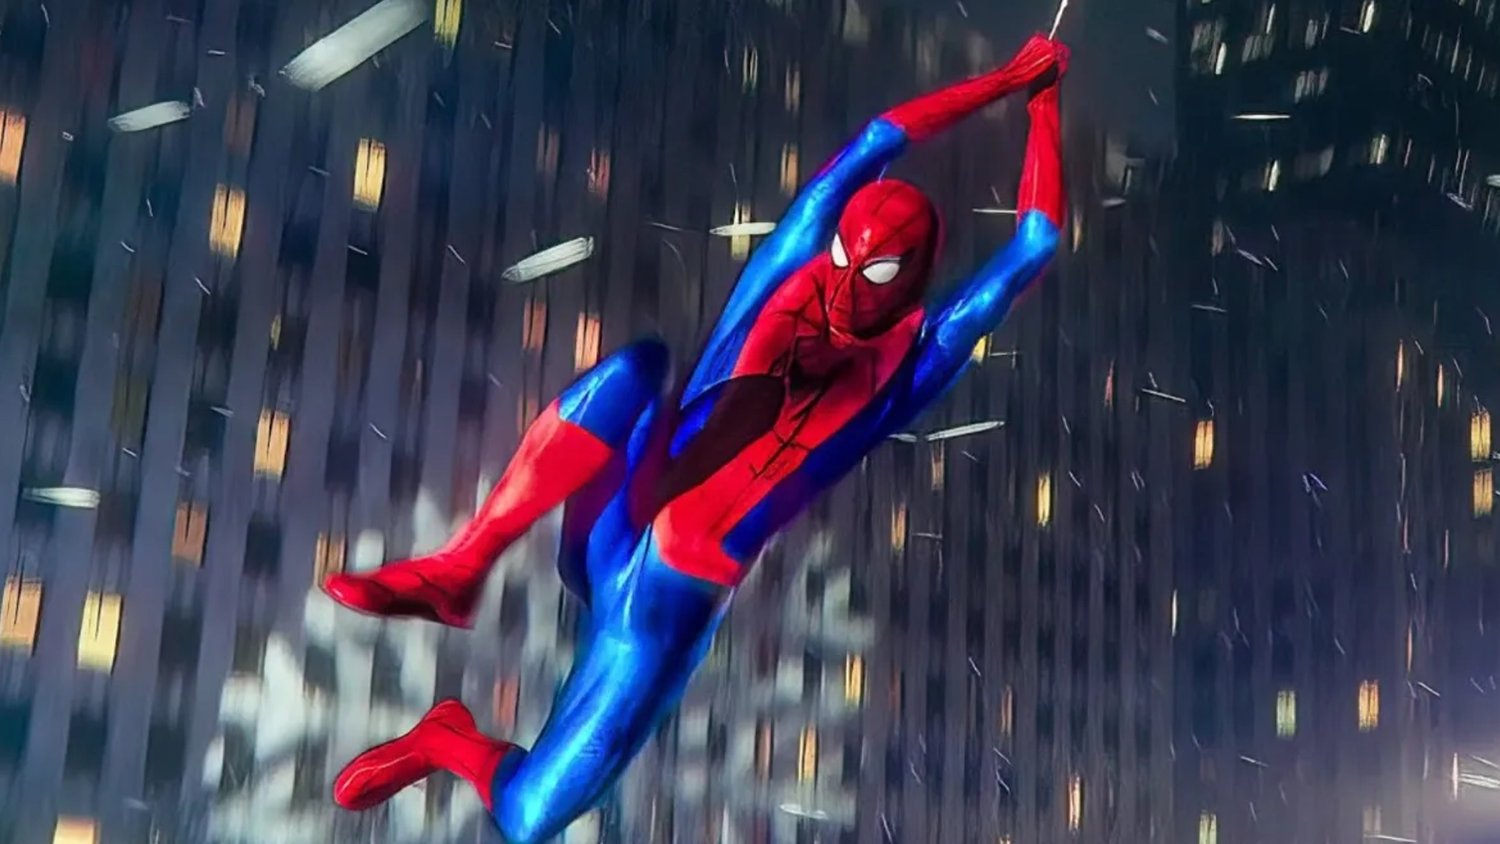 SPIDER-MAN 4 traverserait un petit drame avec Marvel contre Sony voulant des réalisateurs différents